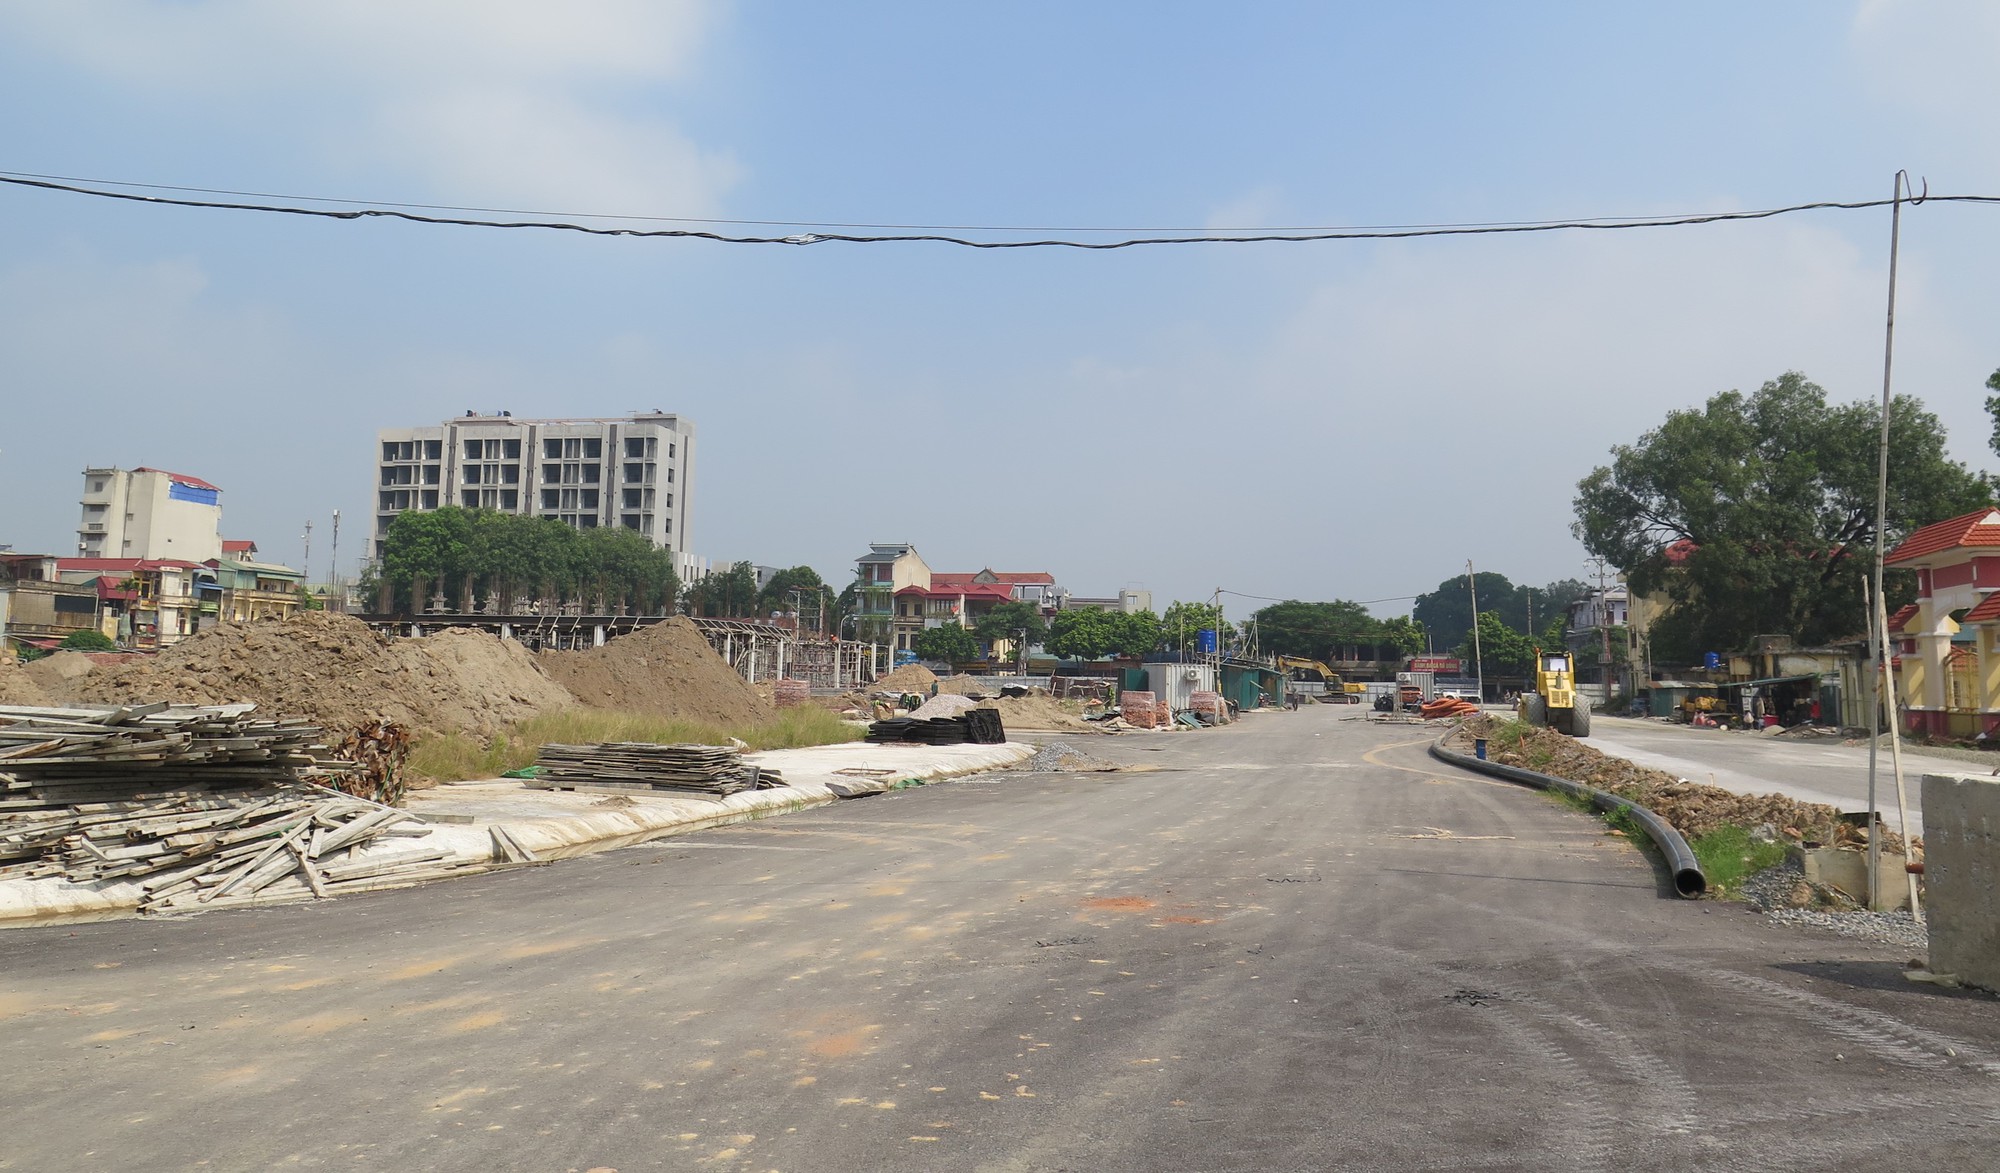 Tiếp bài Dự án khu đô thị xâm lấn đường ở Hà Nội: Công ty CP Him Lam thi công sai giấy phép - Ảnh 2.